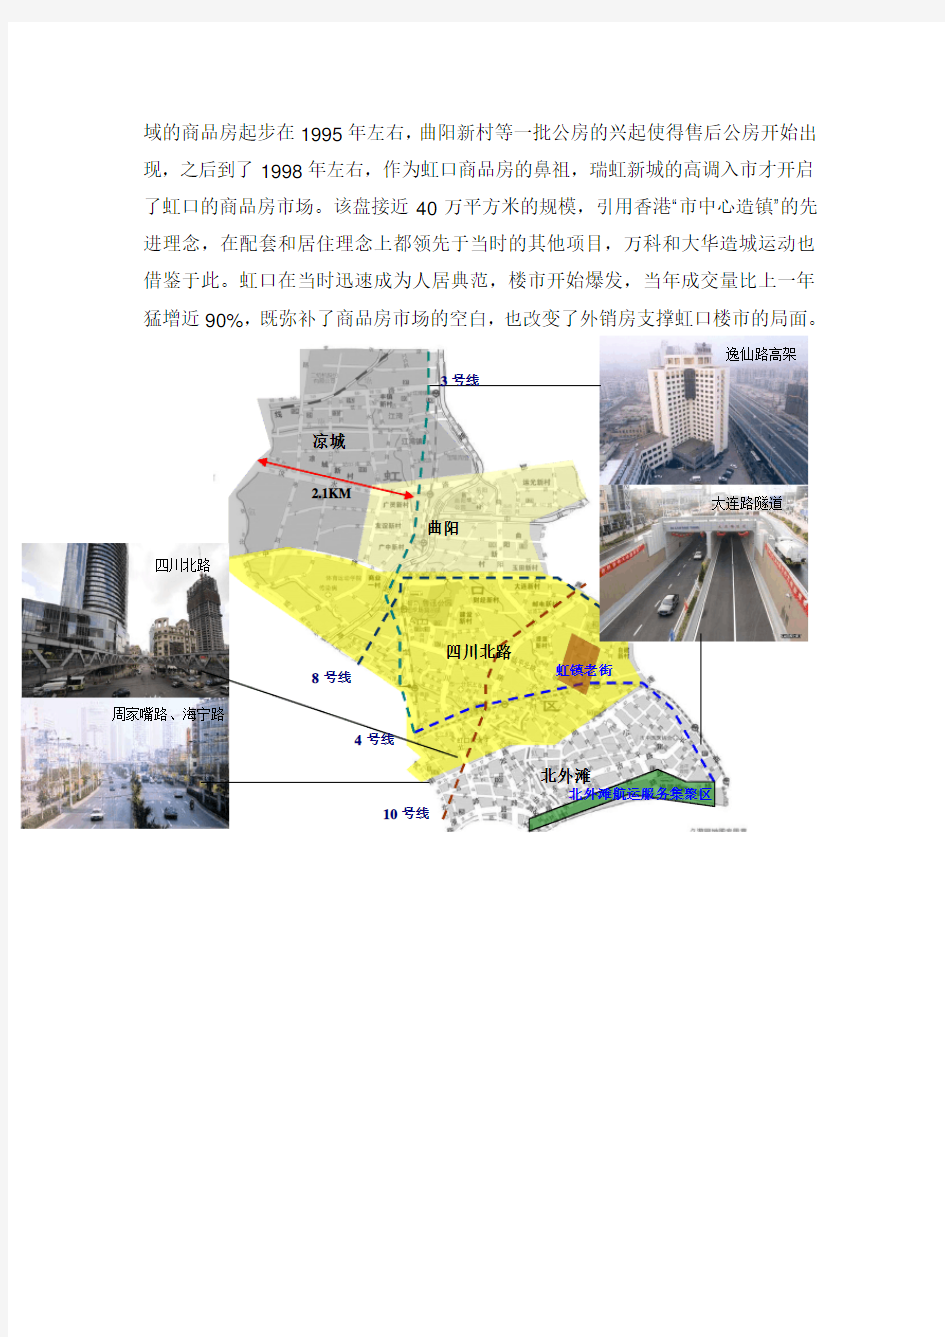 上海各区域楼市发展脉络